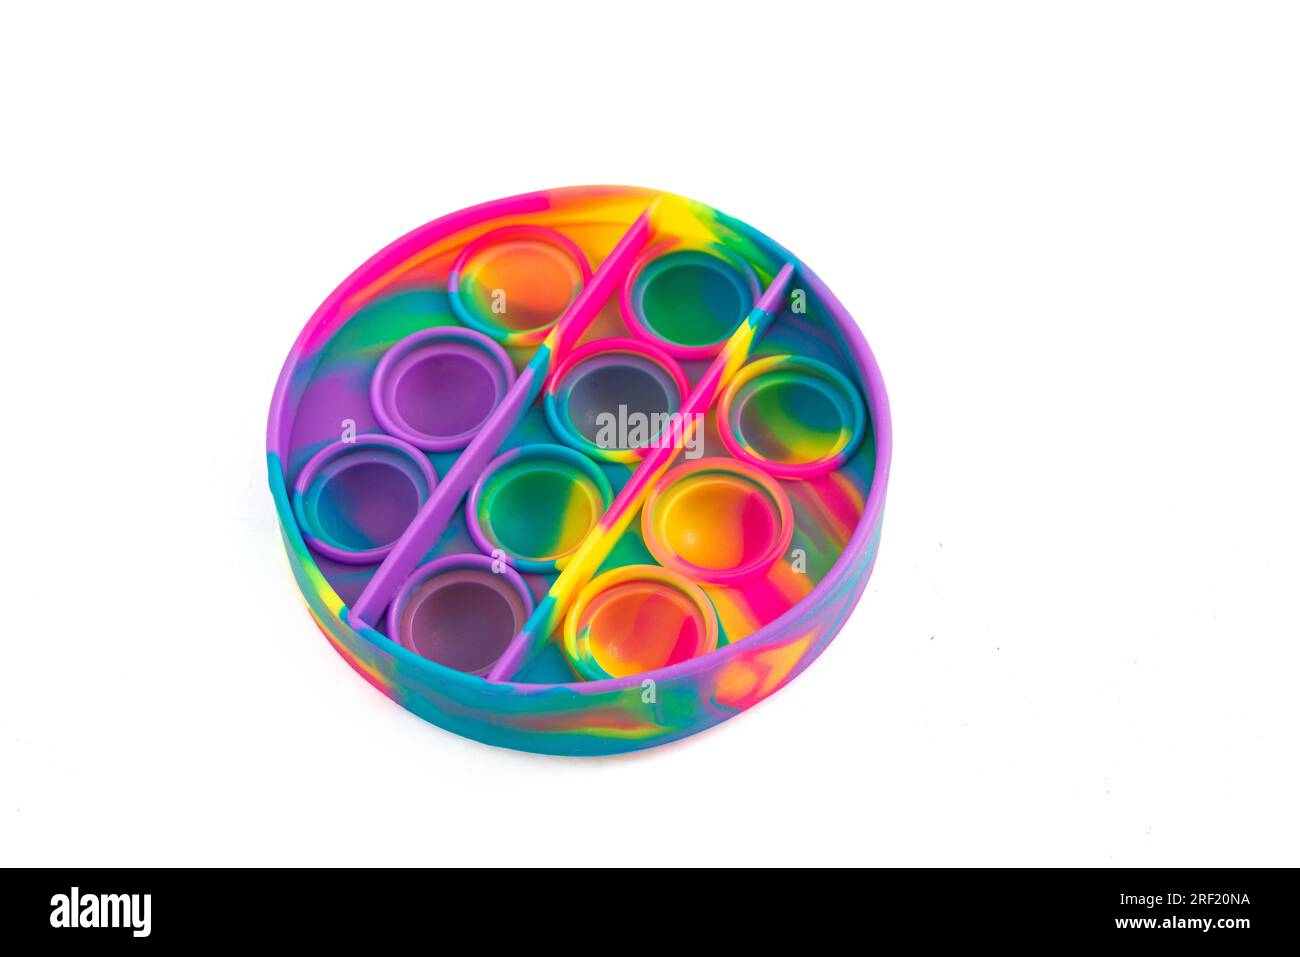 Popular juguete antiestrés de silicona multicolor. Colorido anti estrés juguete sensorial fidget empujar pop. Foto de stock